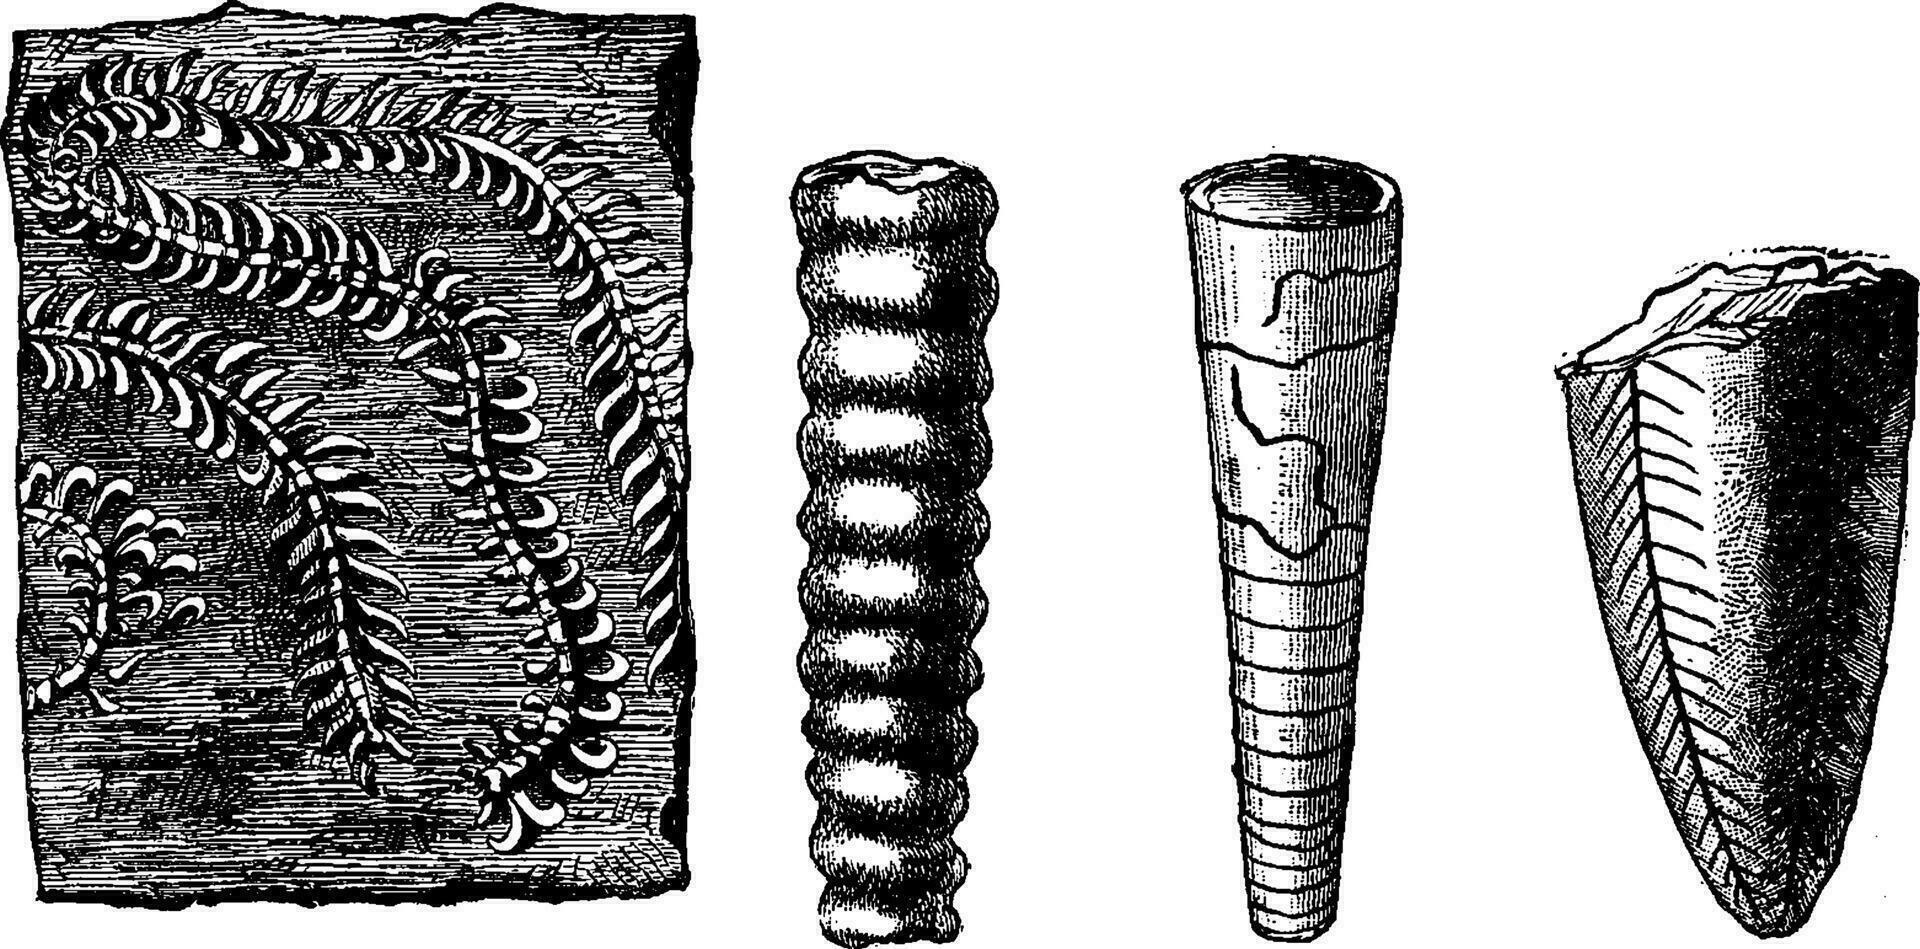 äldre djur. cambrian och silur period, årgång gravyr. vektor